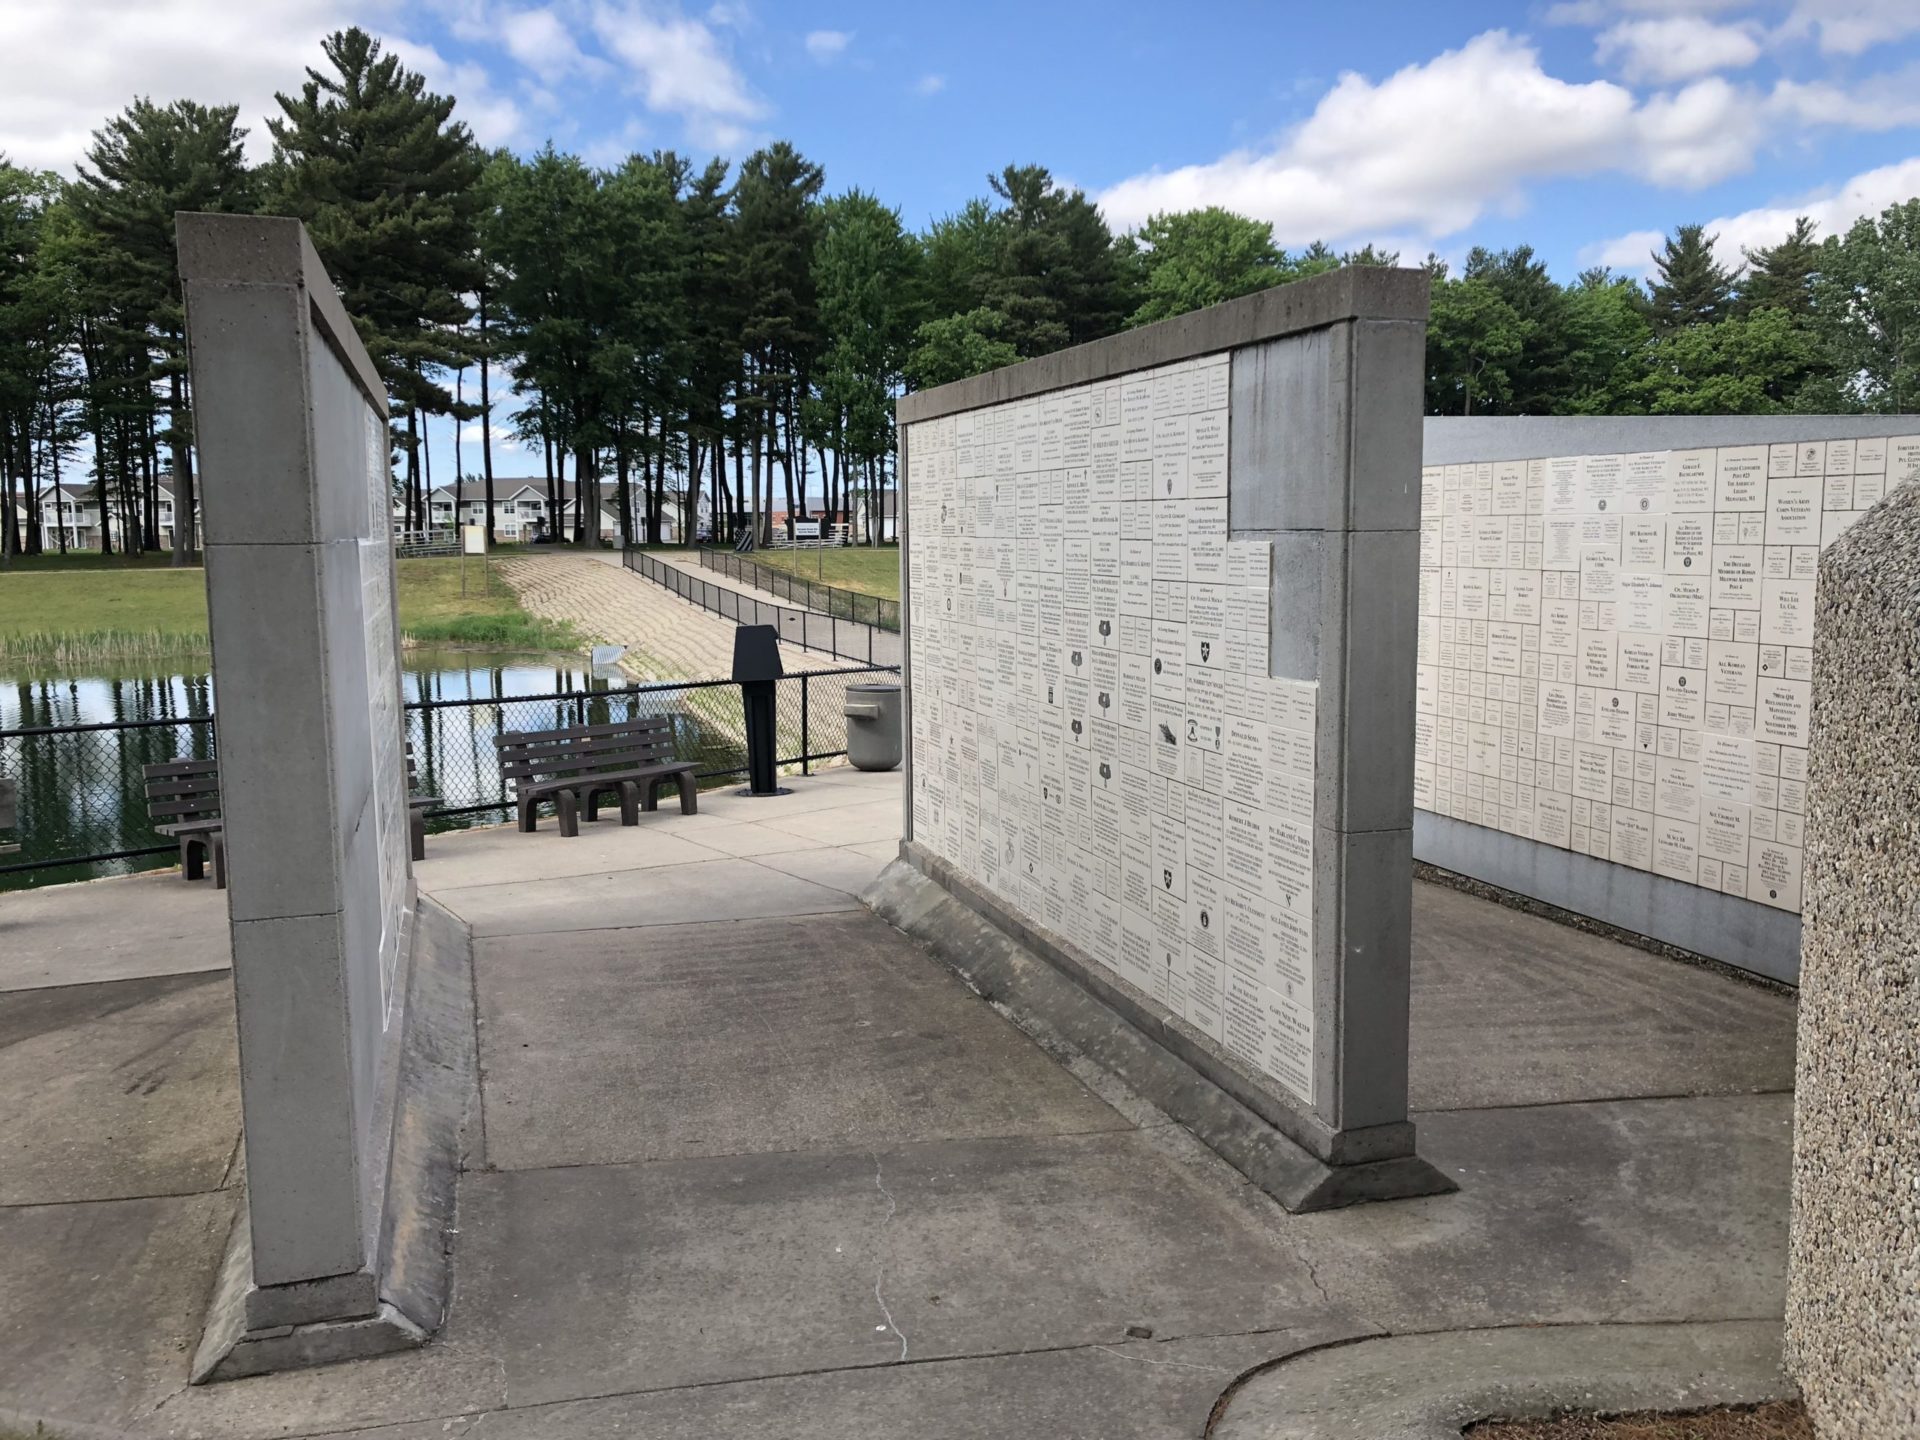 Korean War Memorials - Plover